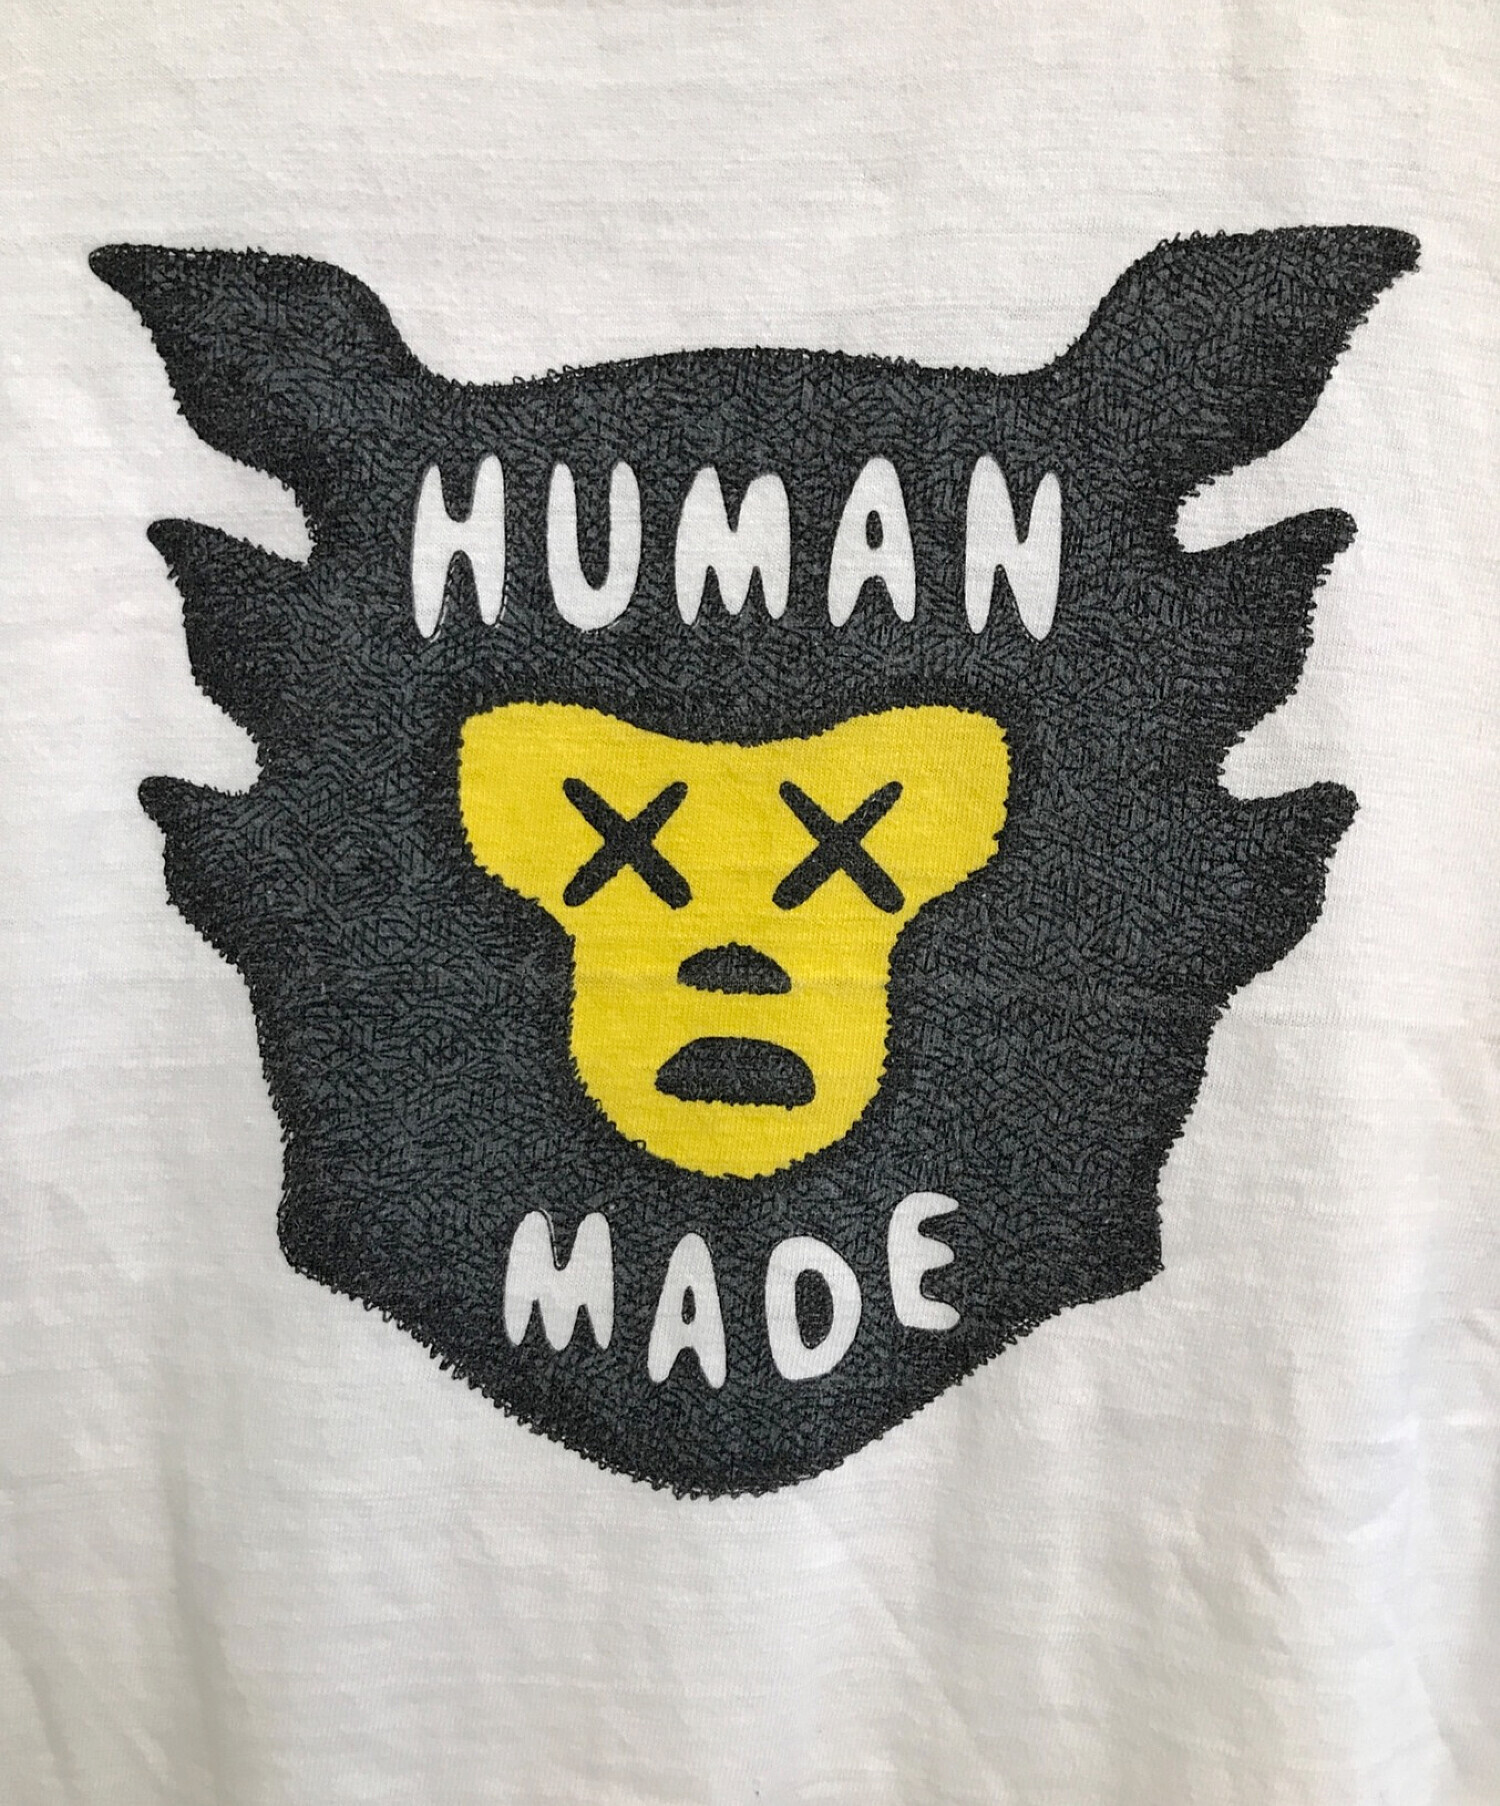 中古・古着通販】HUMAN MADE (ヒューマンメイド) プリントTシャツ